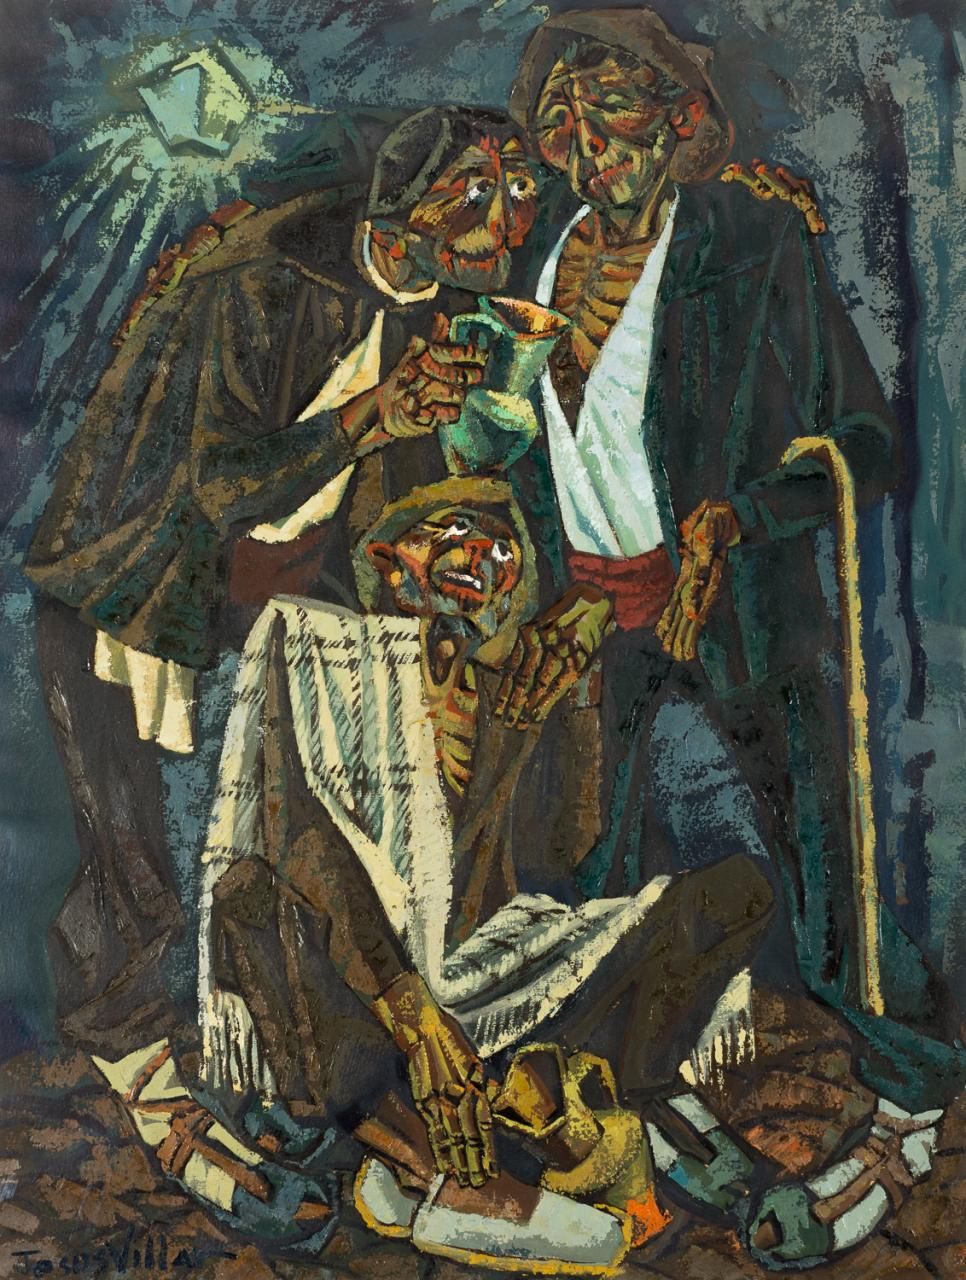 JESÚS VILLAR (Segura de la Sierra, 1930) Tre contadini
Olio su carta
65 x 49 cm
&hellip;